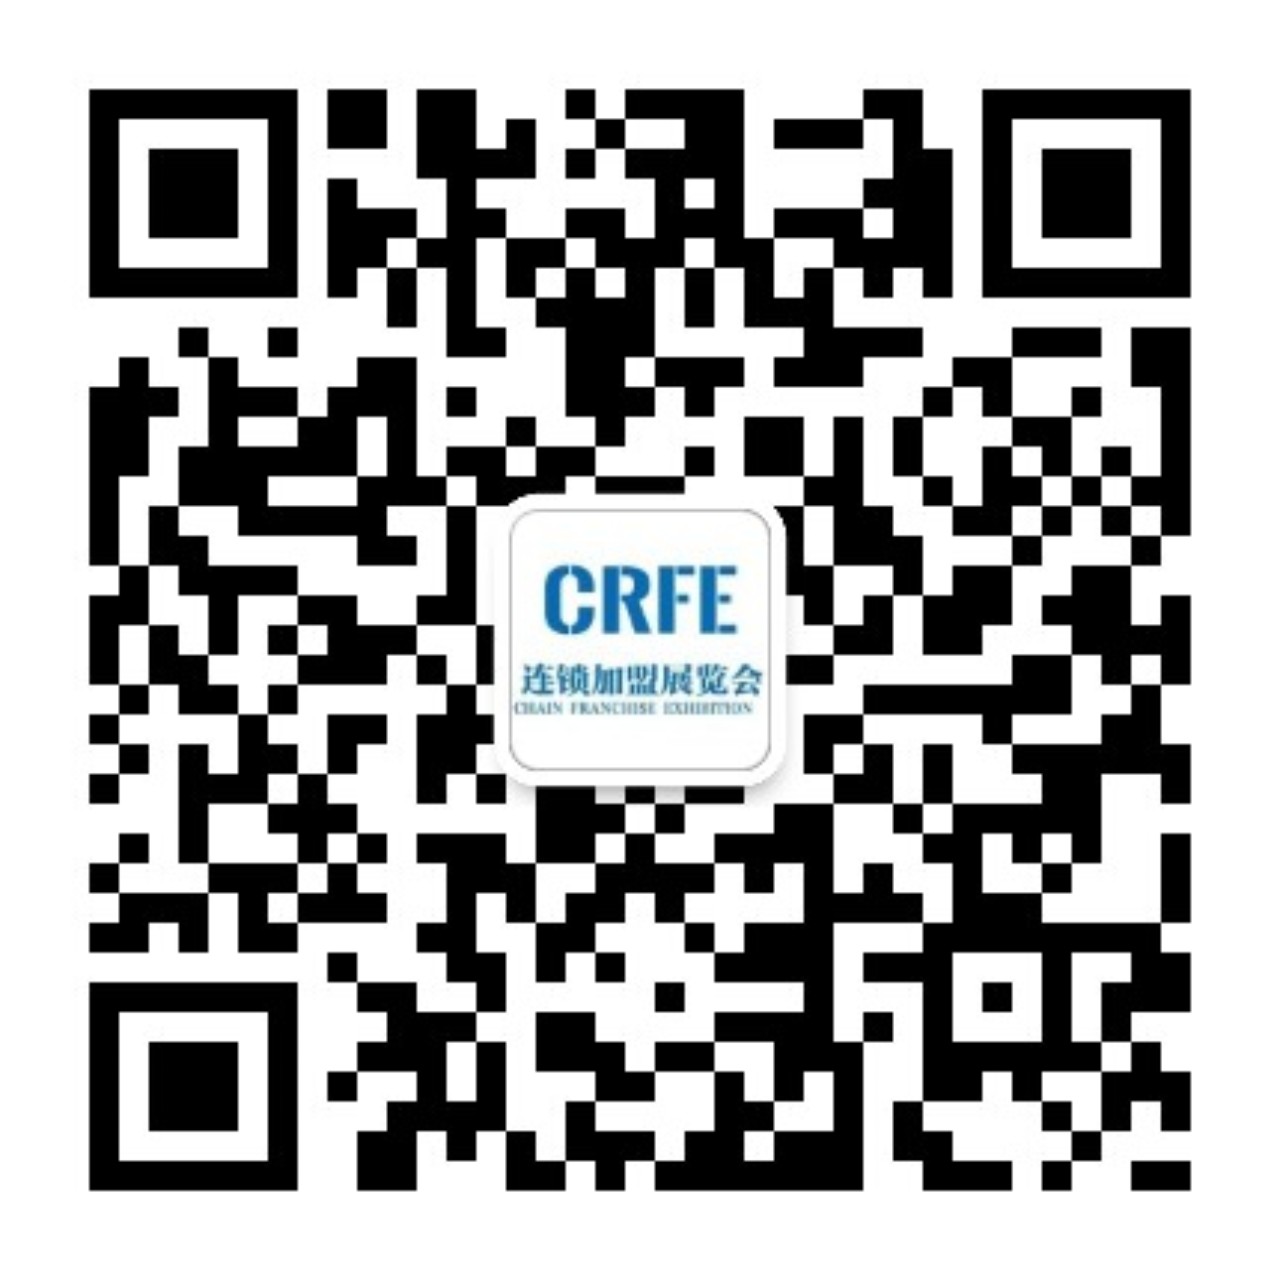 CRFE济南连锁加盟展微信公众号二微码